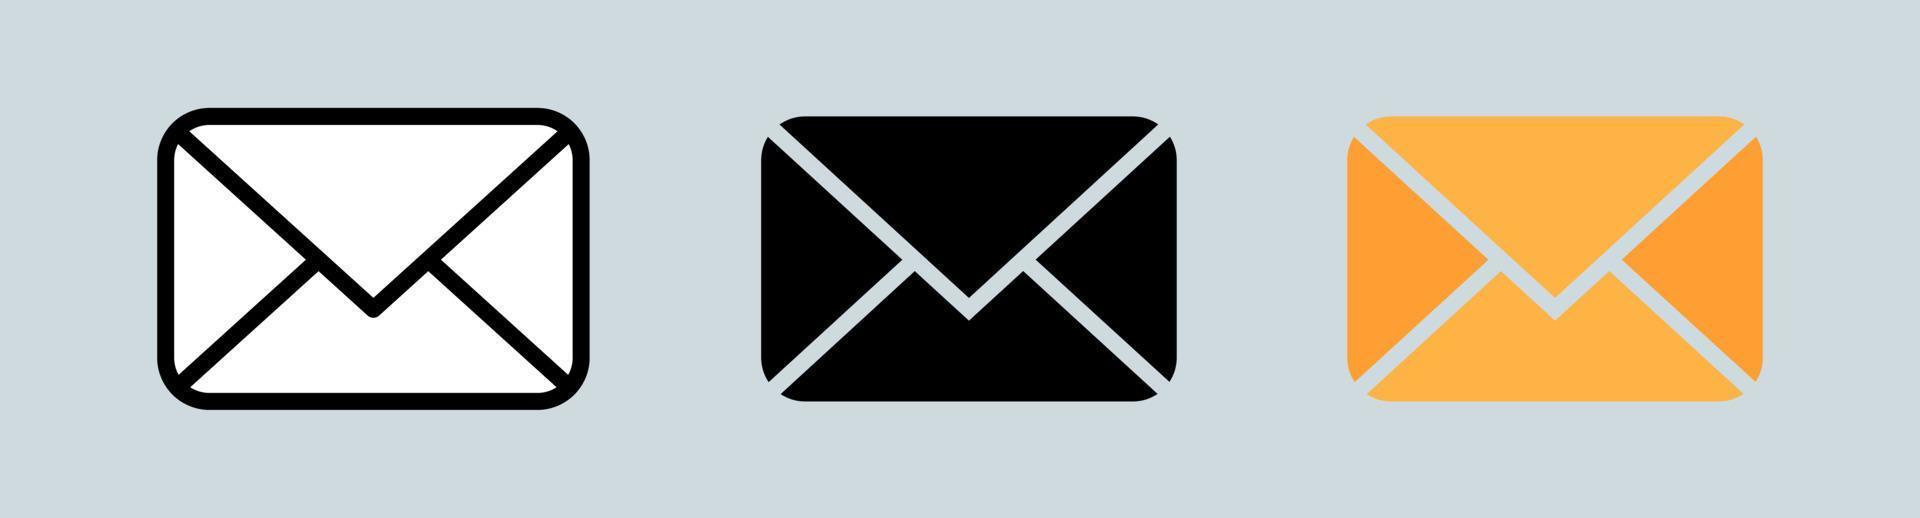 Vektor Schwarz-Weiß-Umschlag-Symbol. Reihe von Umschlagsymbolen.